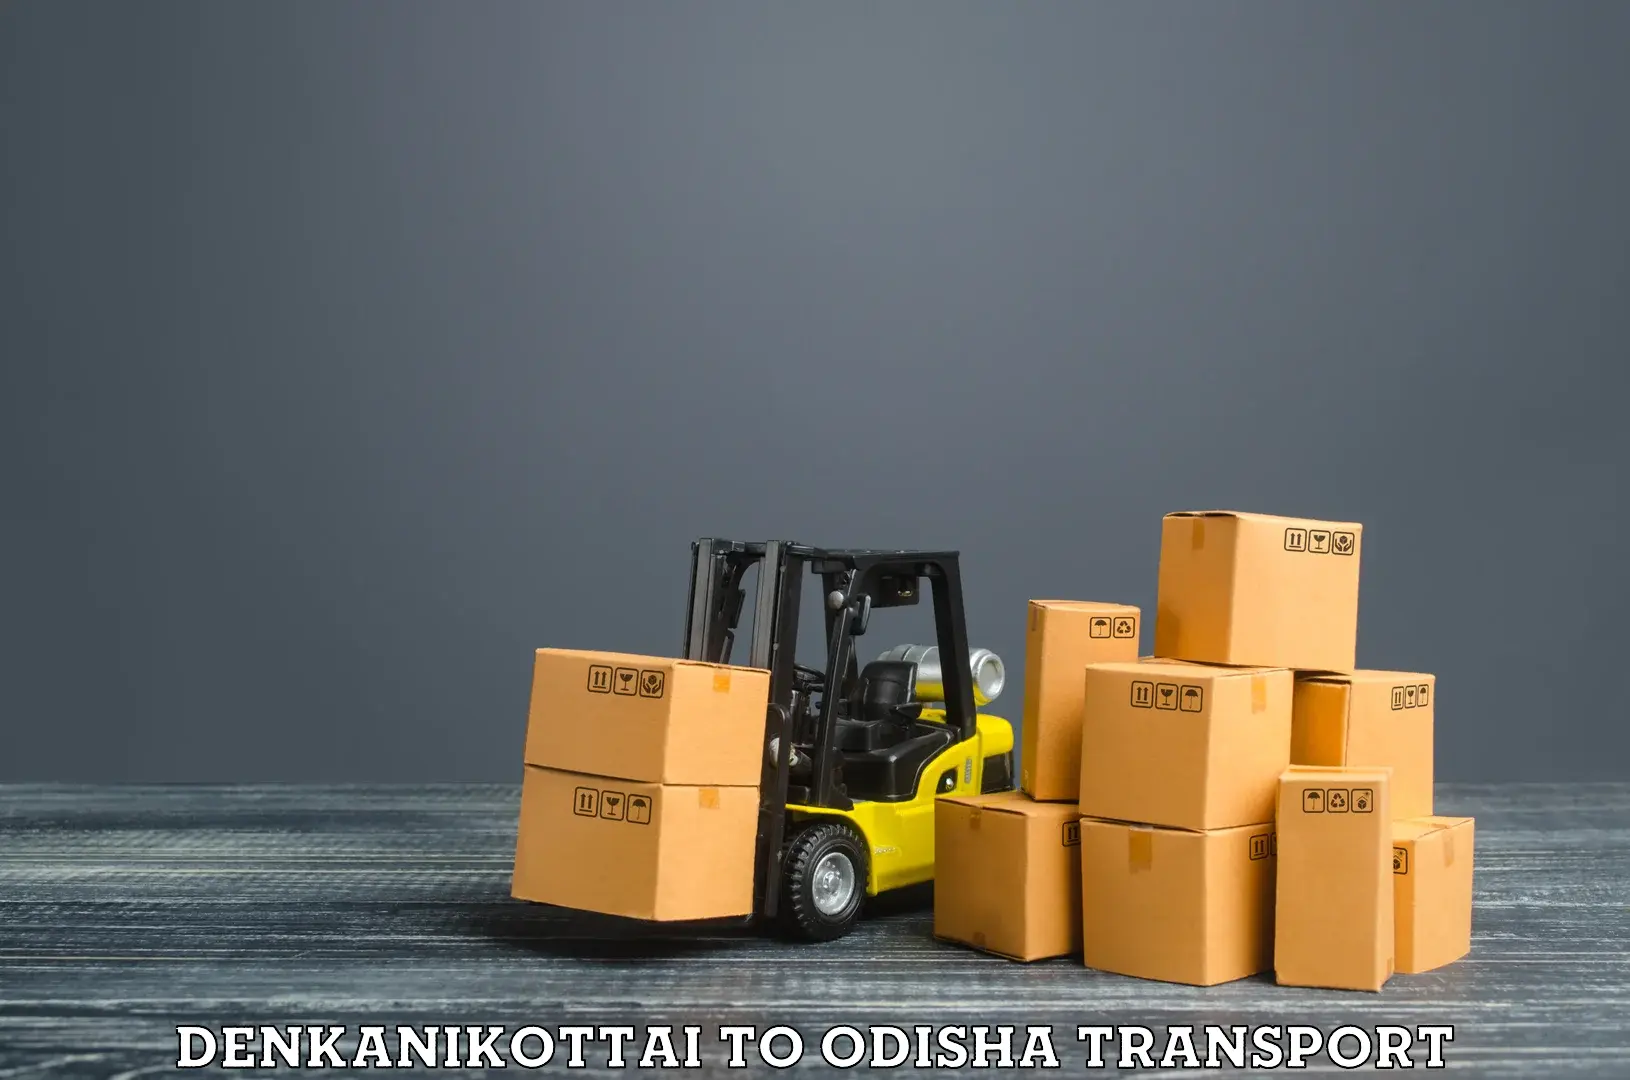 Transportation services Denkanikottai to Mathili